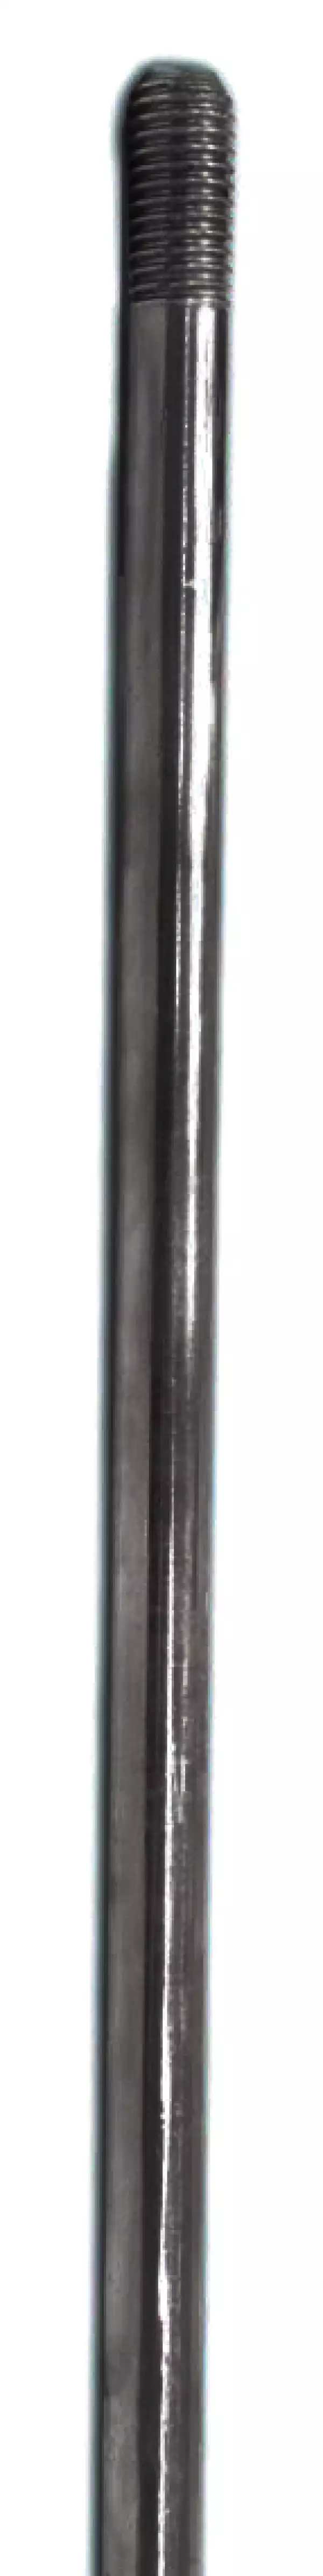 ZANDZ ZZ-001-255 — Штырь заземления горячеоцинкованный резьбовой (D16; 1,5 м; М16; толщина покрытия 100 мкм)